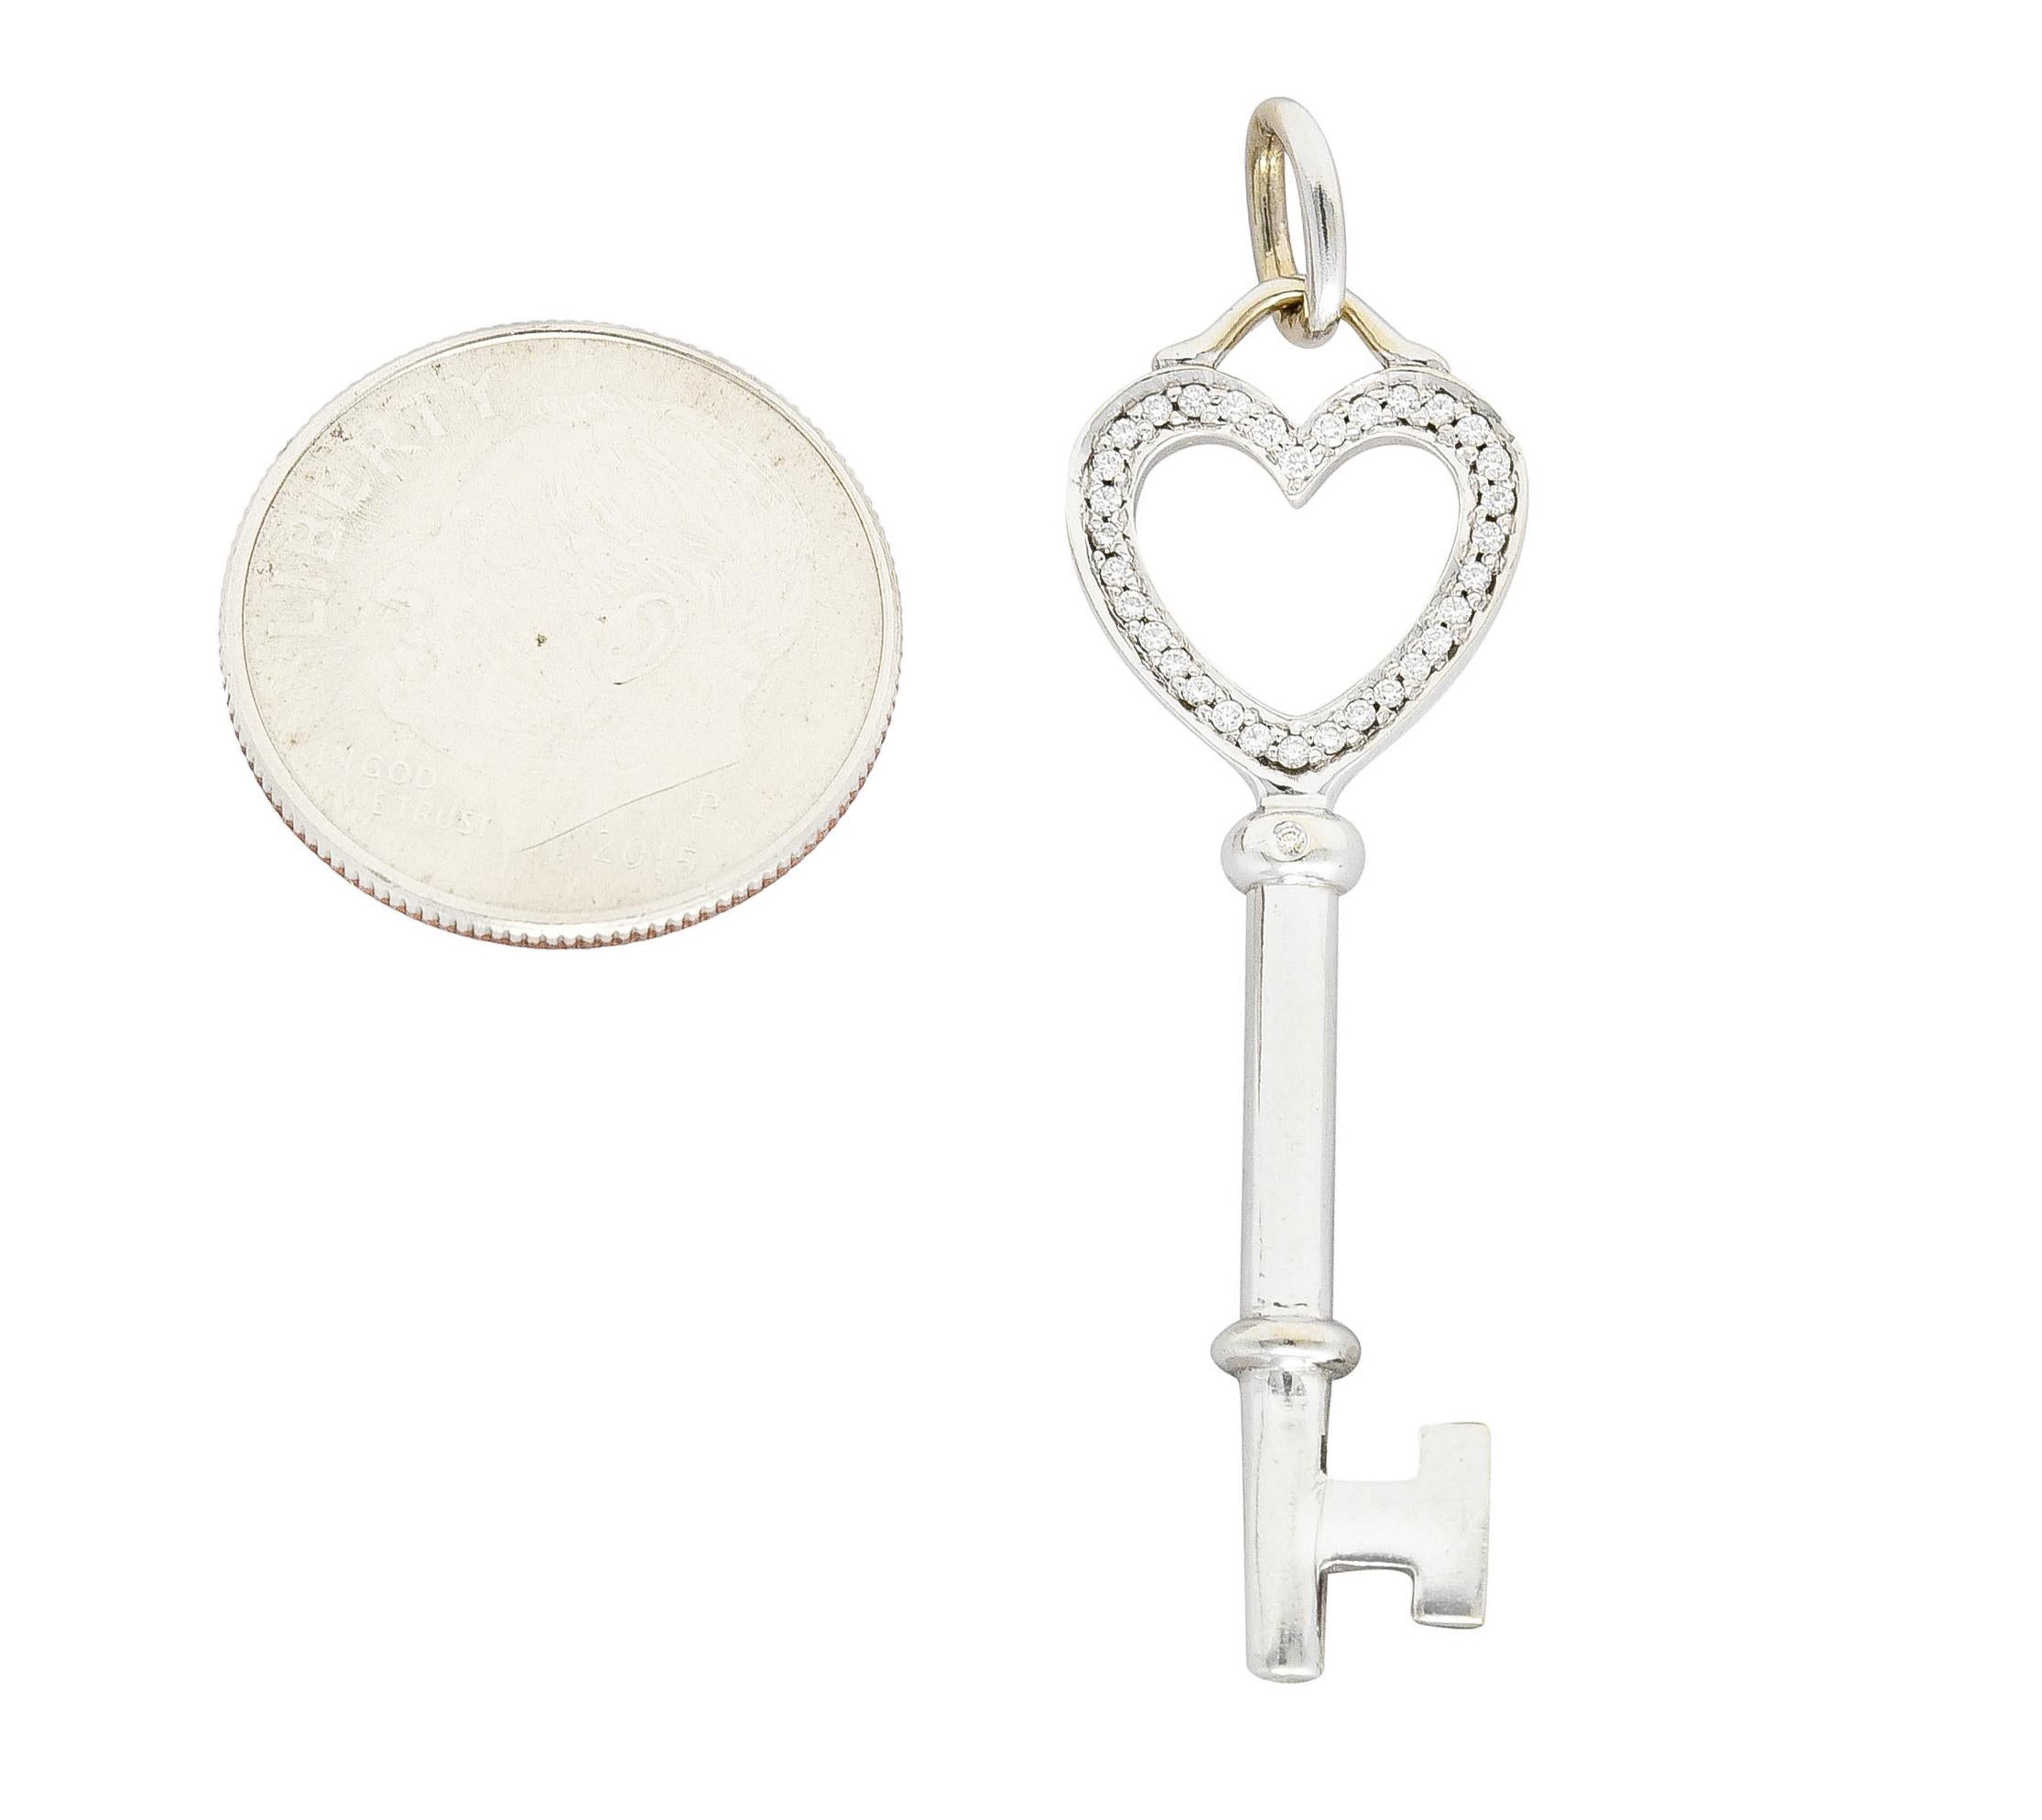 Tiffany & Co. Contemporary Diamond 18 Karat White Gold Heart Key Pendant 3